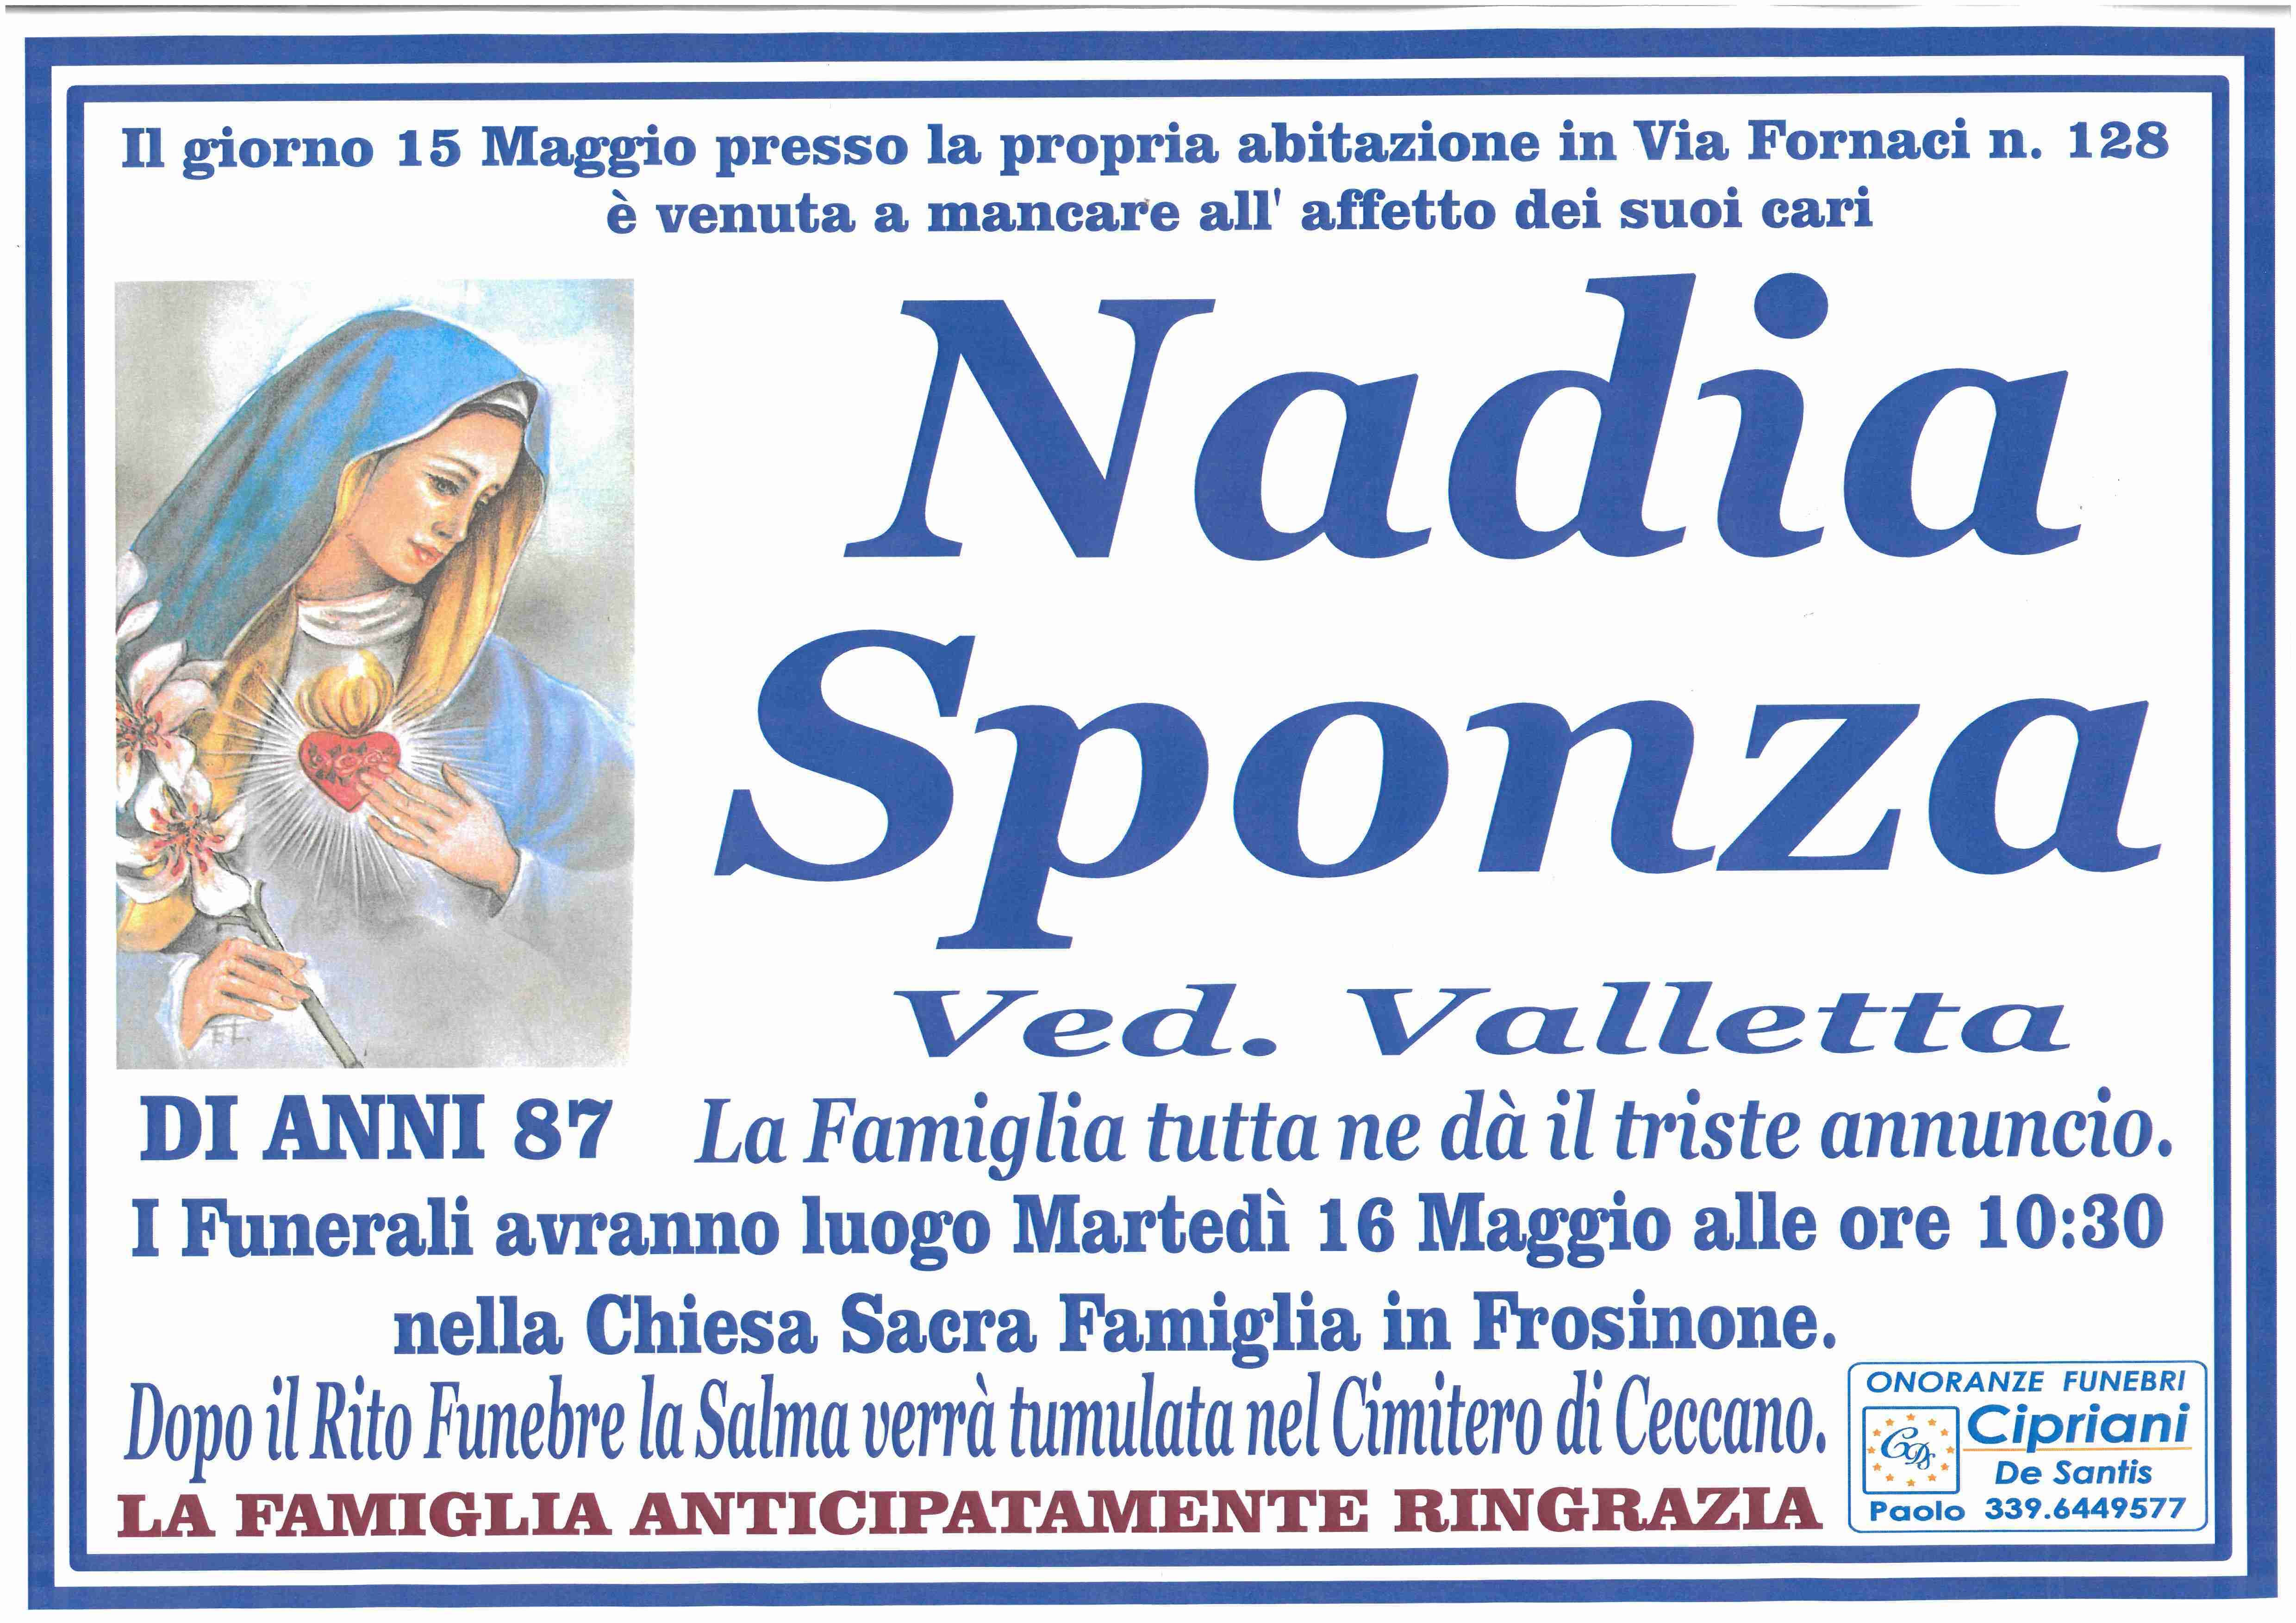 Nadia Sponza